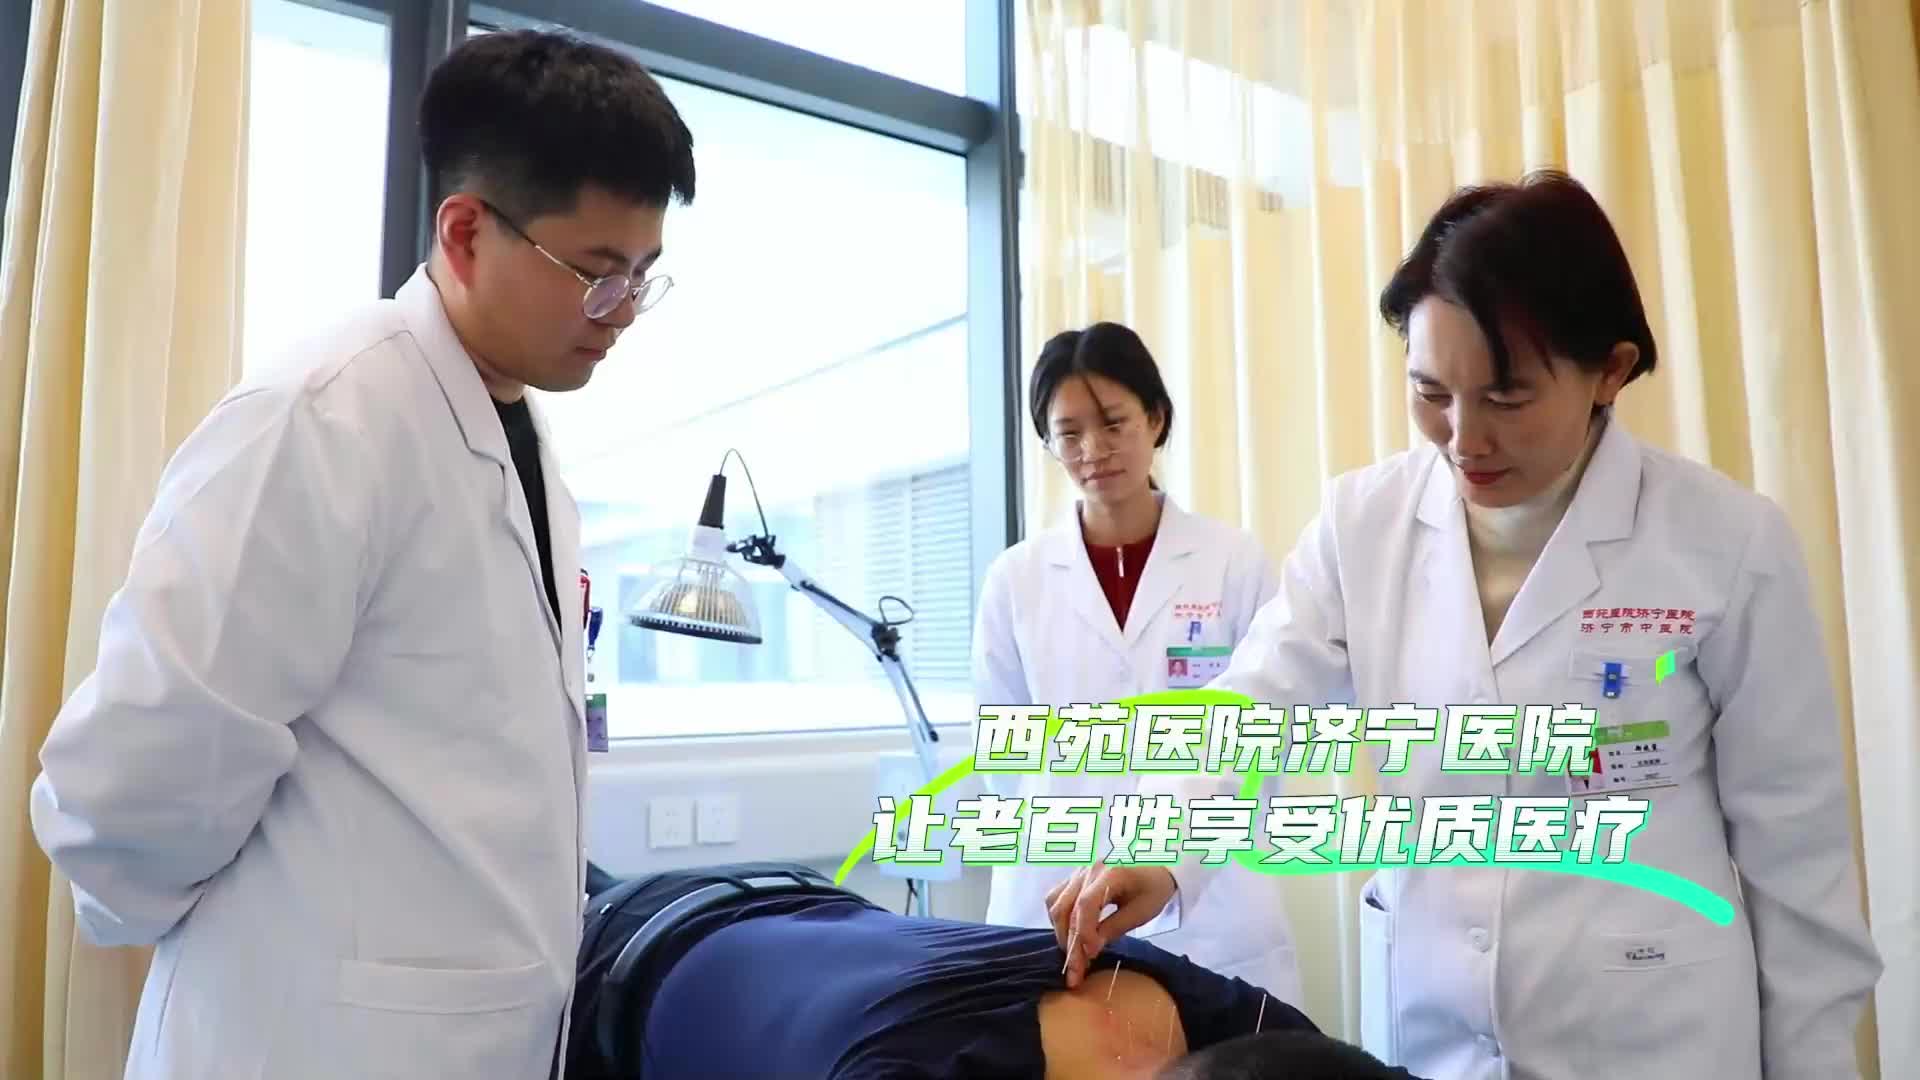 更济宁 | 西苑医院济宁医院 让老百姓享受优质医疗 